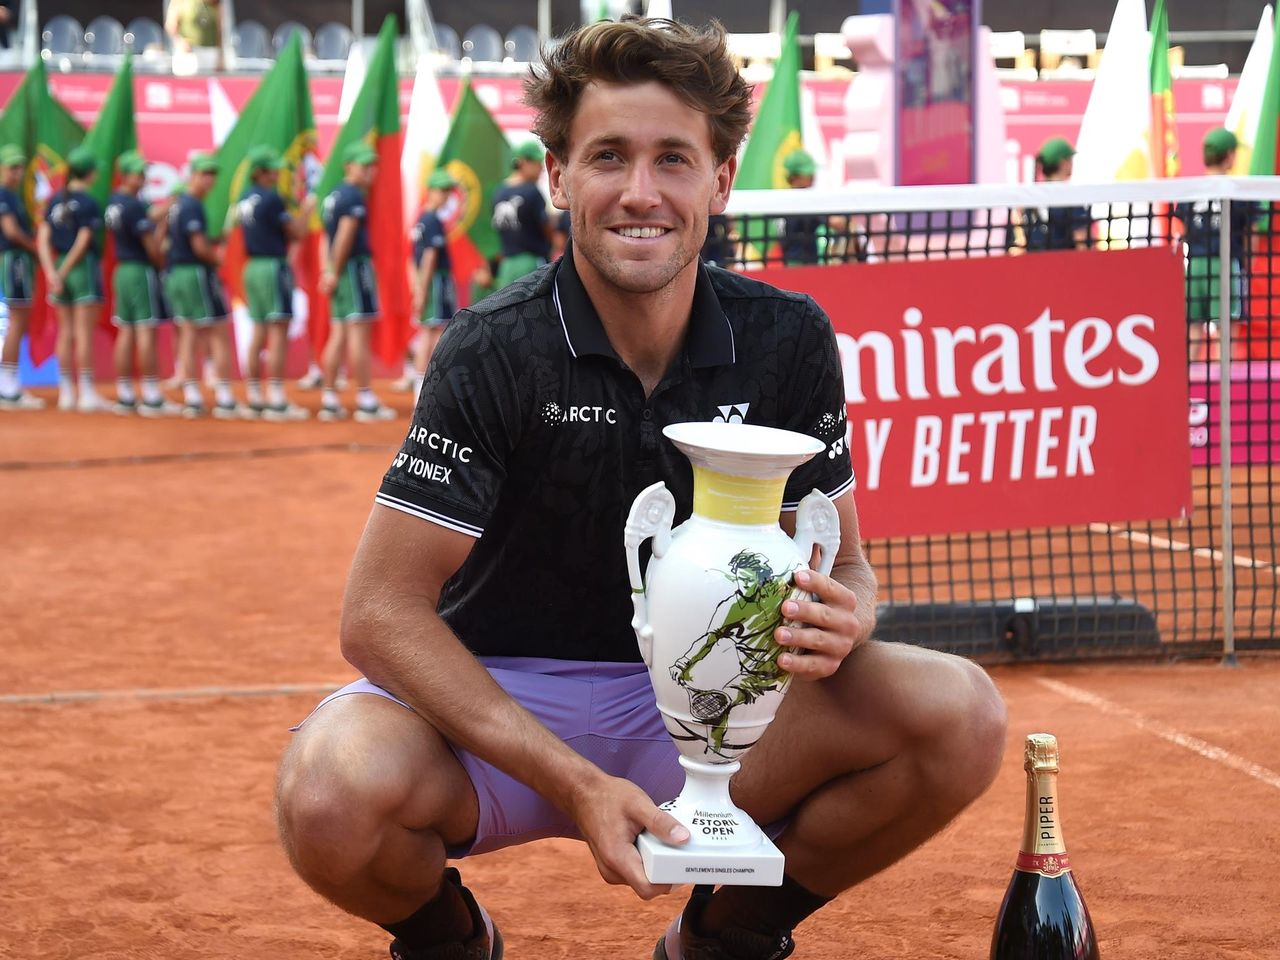 Erster Saisontitel perfekt Casper Ruud gewinnt Finale in Estoril gegen Miomir Kecmanovic - Tennis Video